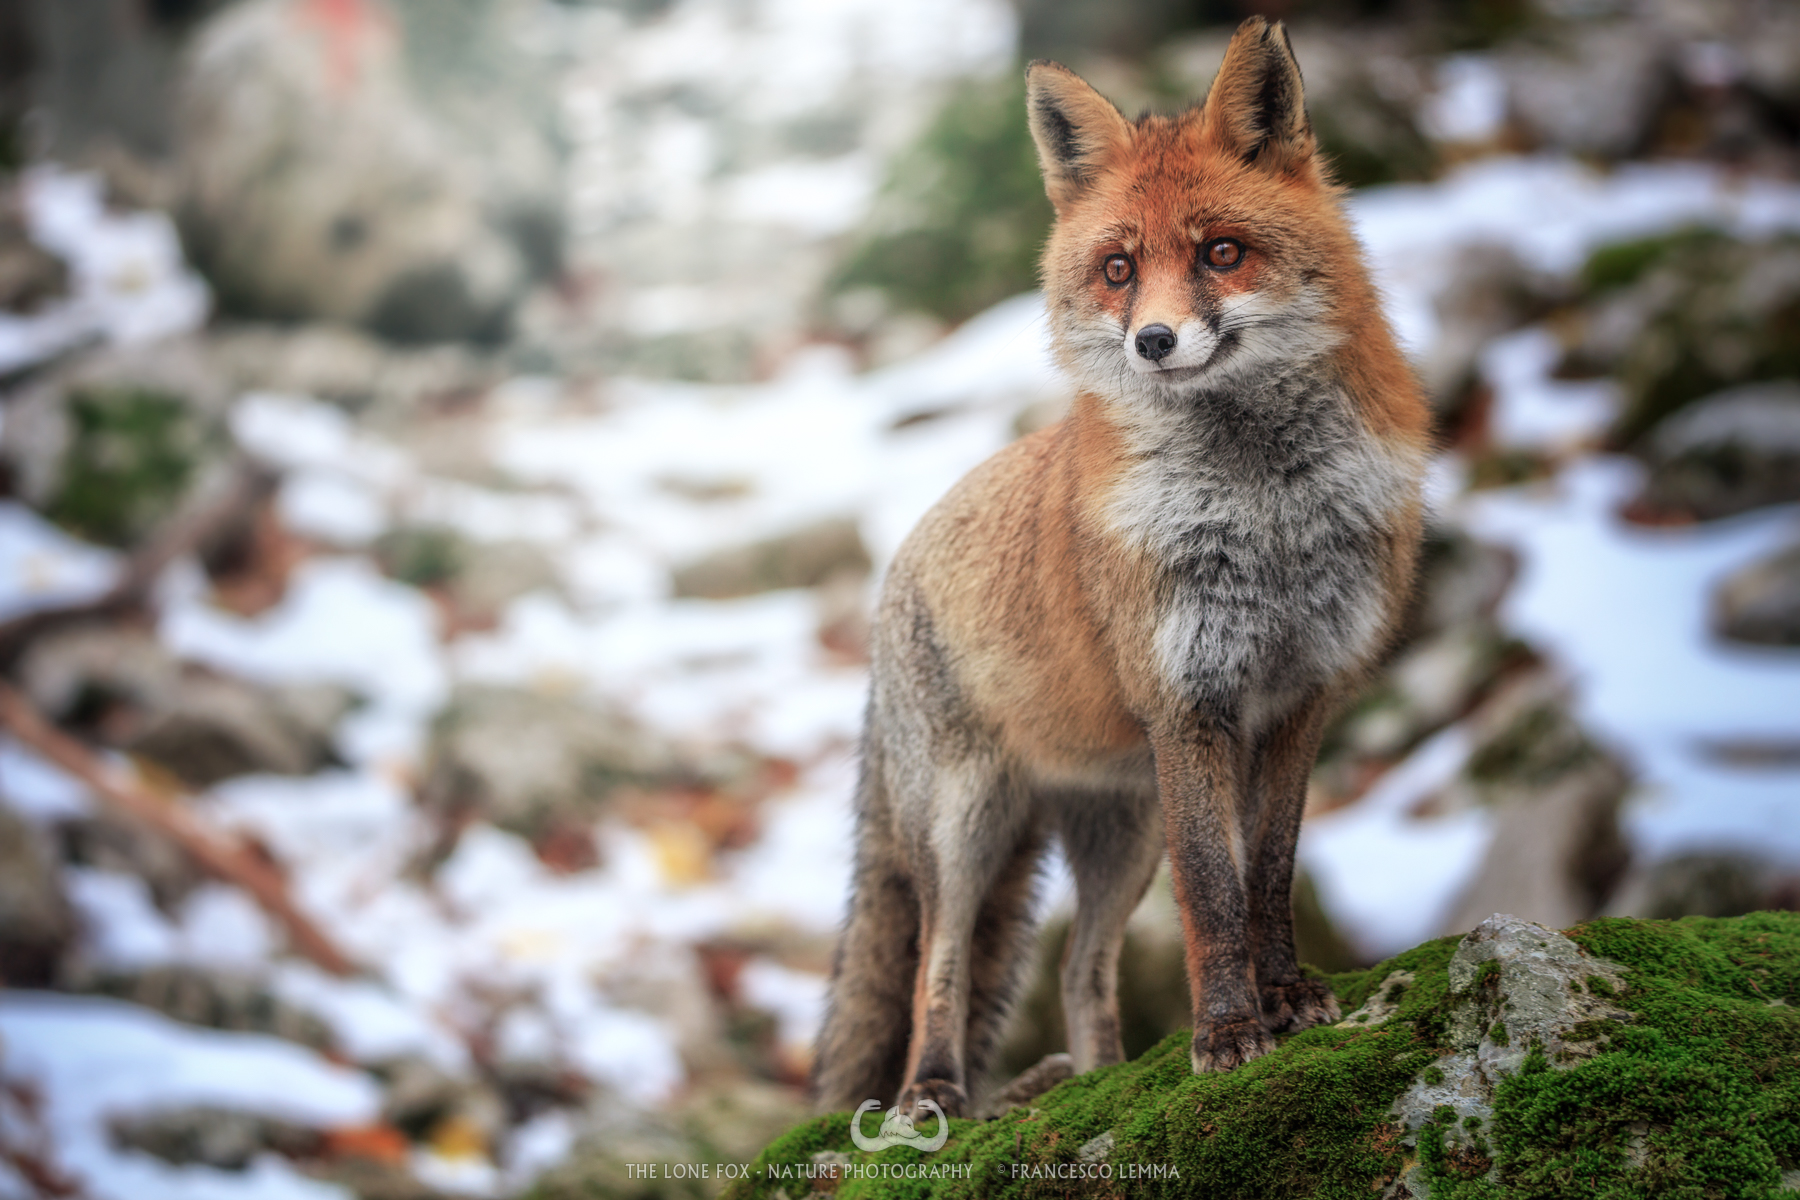 The curious fox 2...